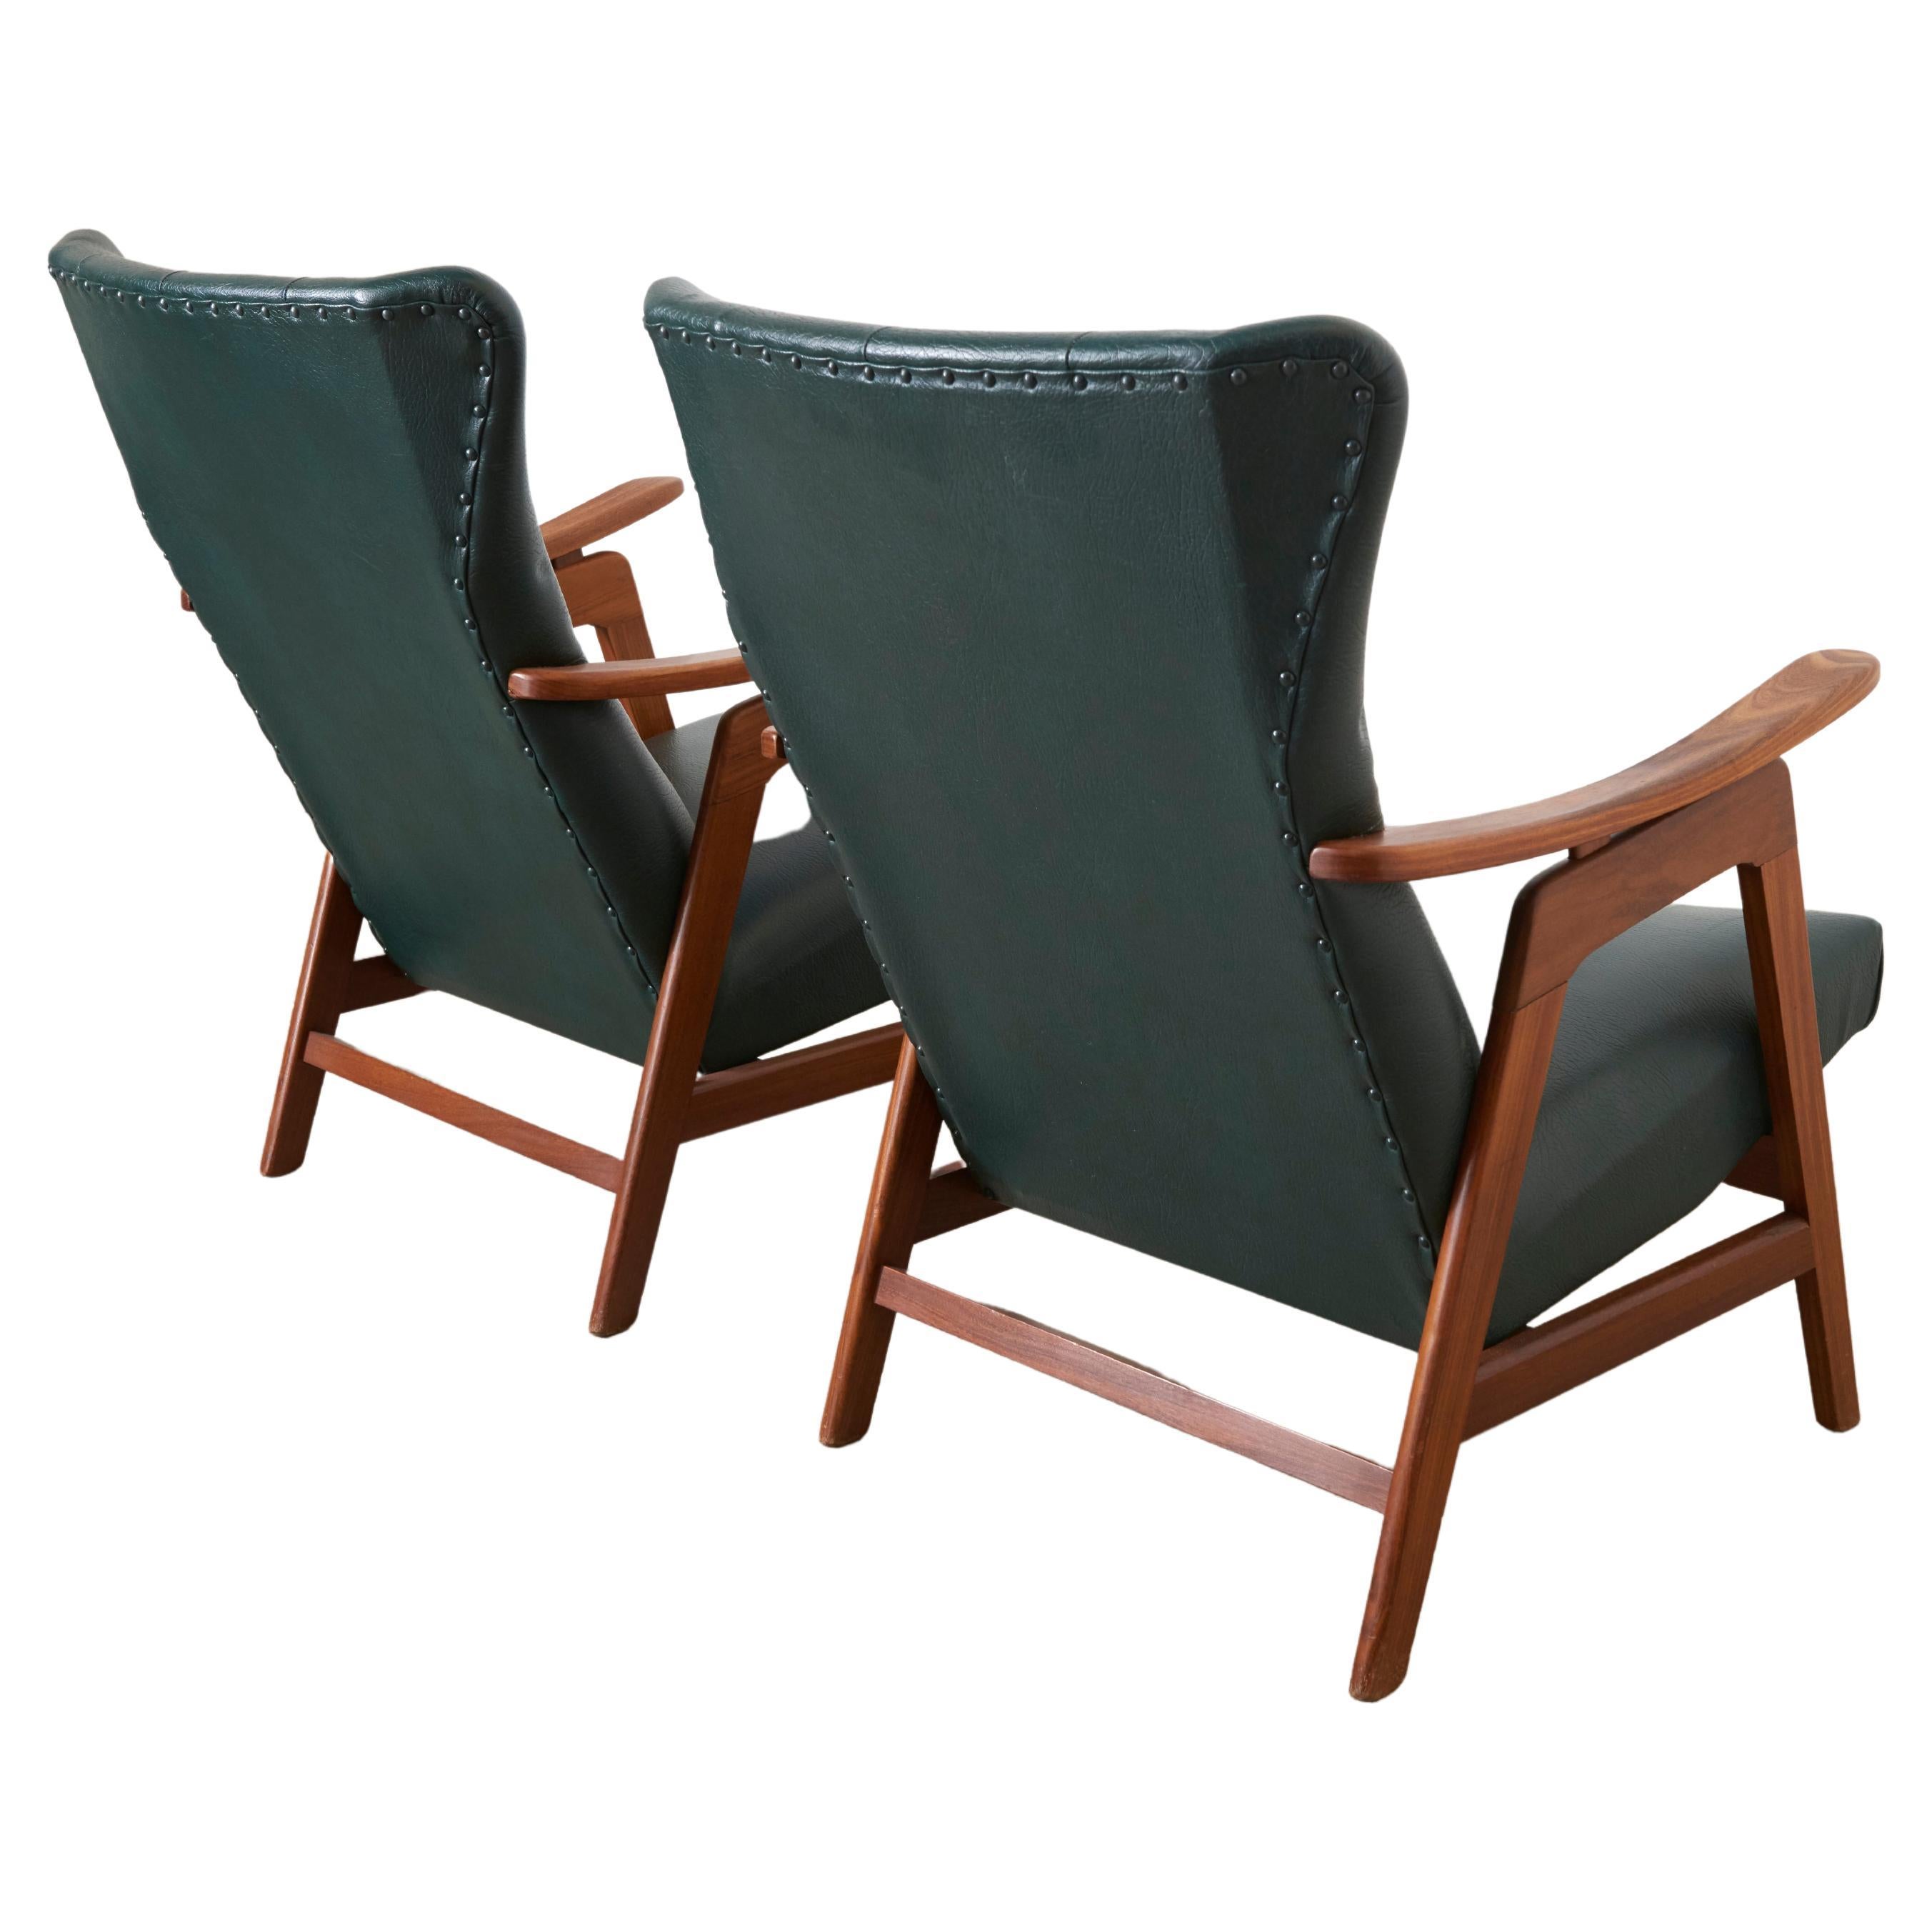 Magnifique ensemble de deux chaises longues conçues par Louis Van Teeffelen pour Webe, dans les années 1960. 

Les chaises sont dotées d'un superbe cadre en teck massif de forme organique et de leur revêtement d'origine en similicuir vert. 
Chaises